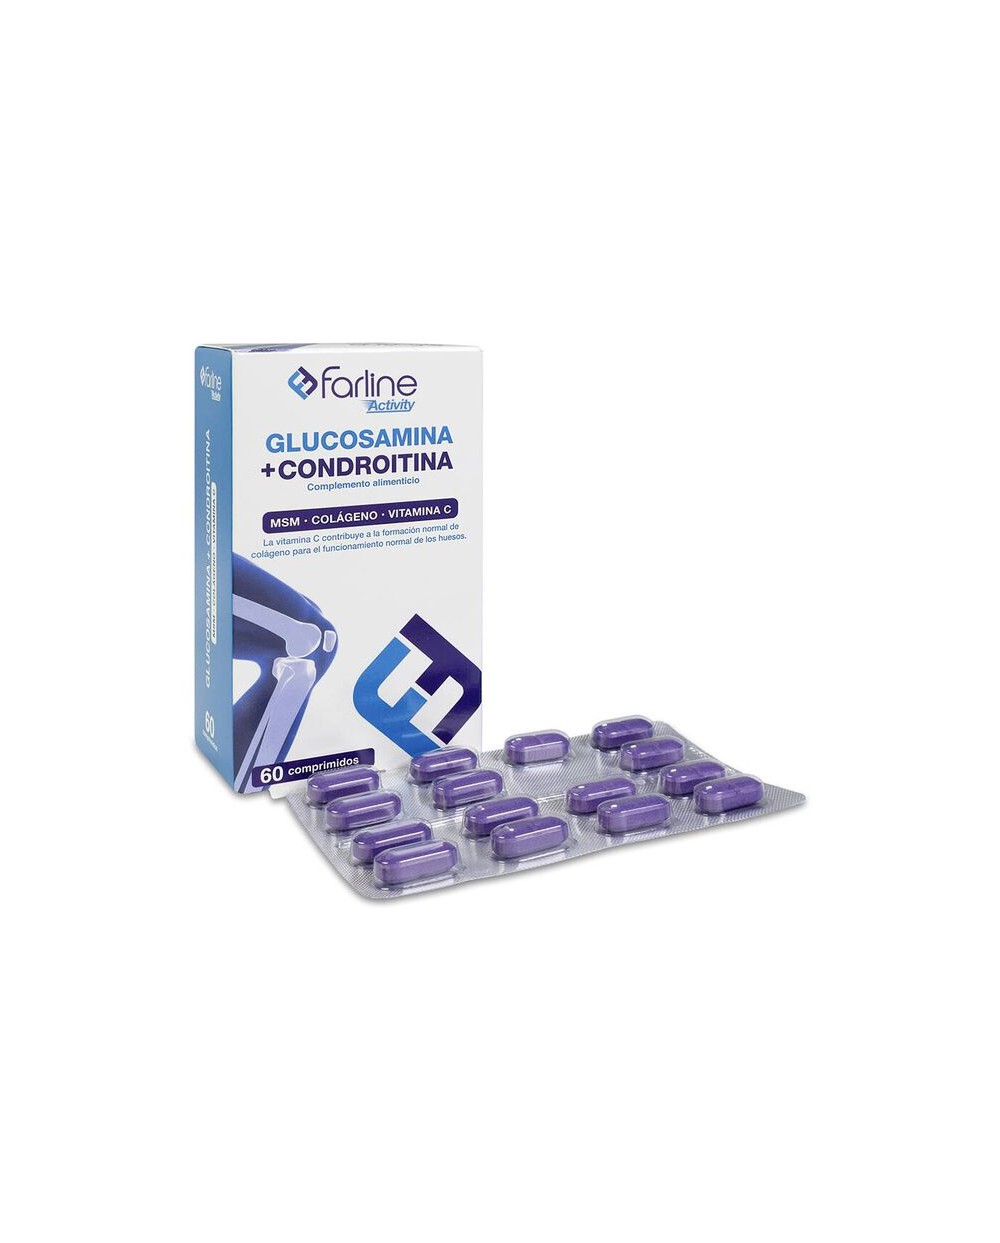 Farline Glucosamina y Condroitina, 60 Comprimidos